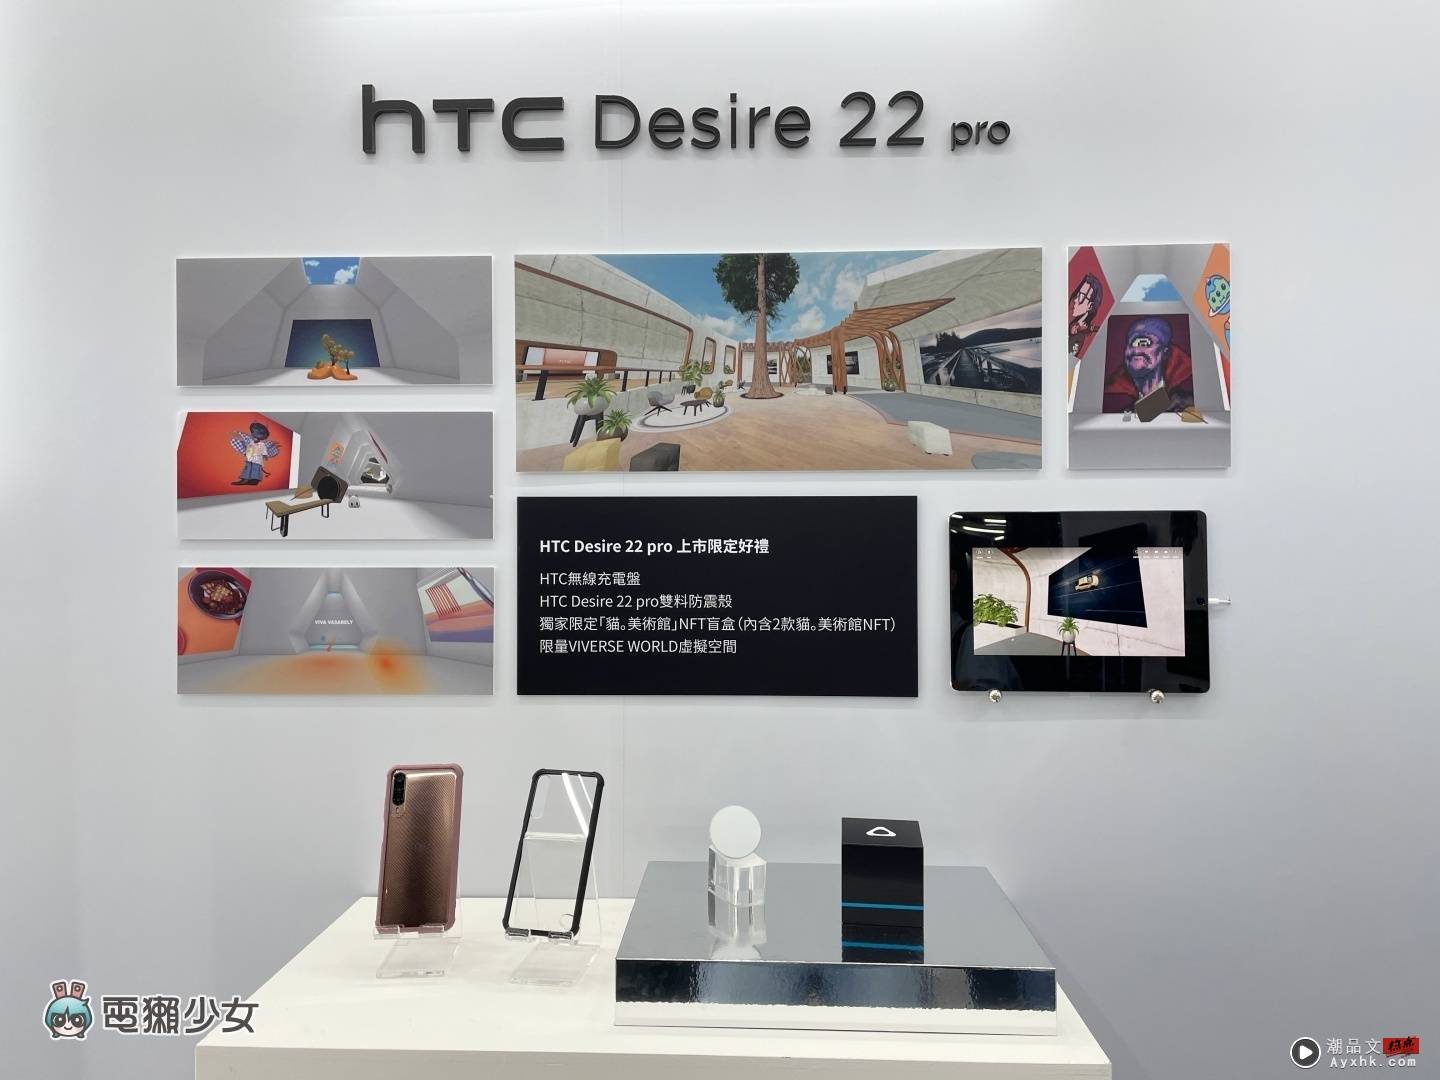 出门｜ HTC Desire 22 pro 在台发表！‘ 元宇宙手机 ’和 VIVERSE 生态系亮点快速动眼看 数码科技 图19张